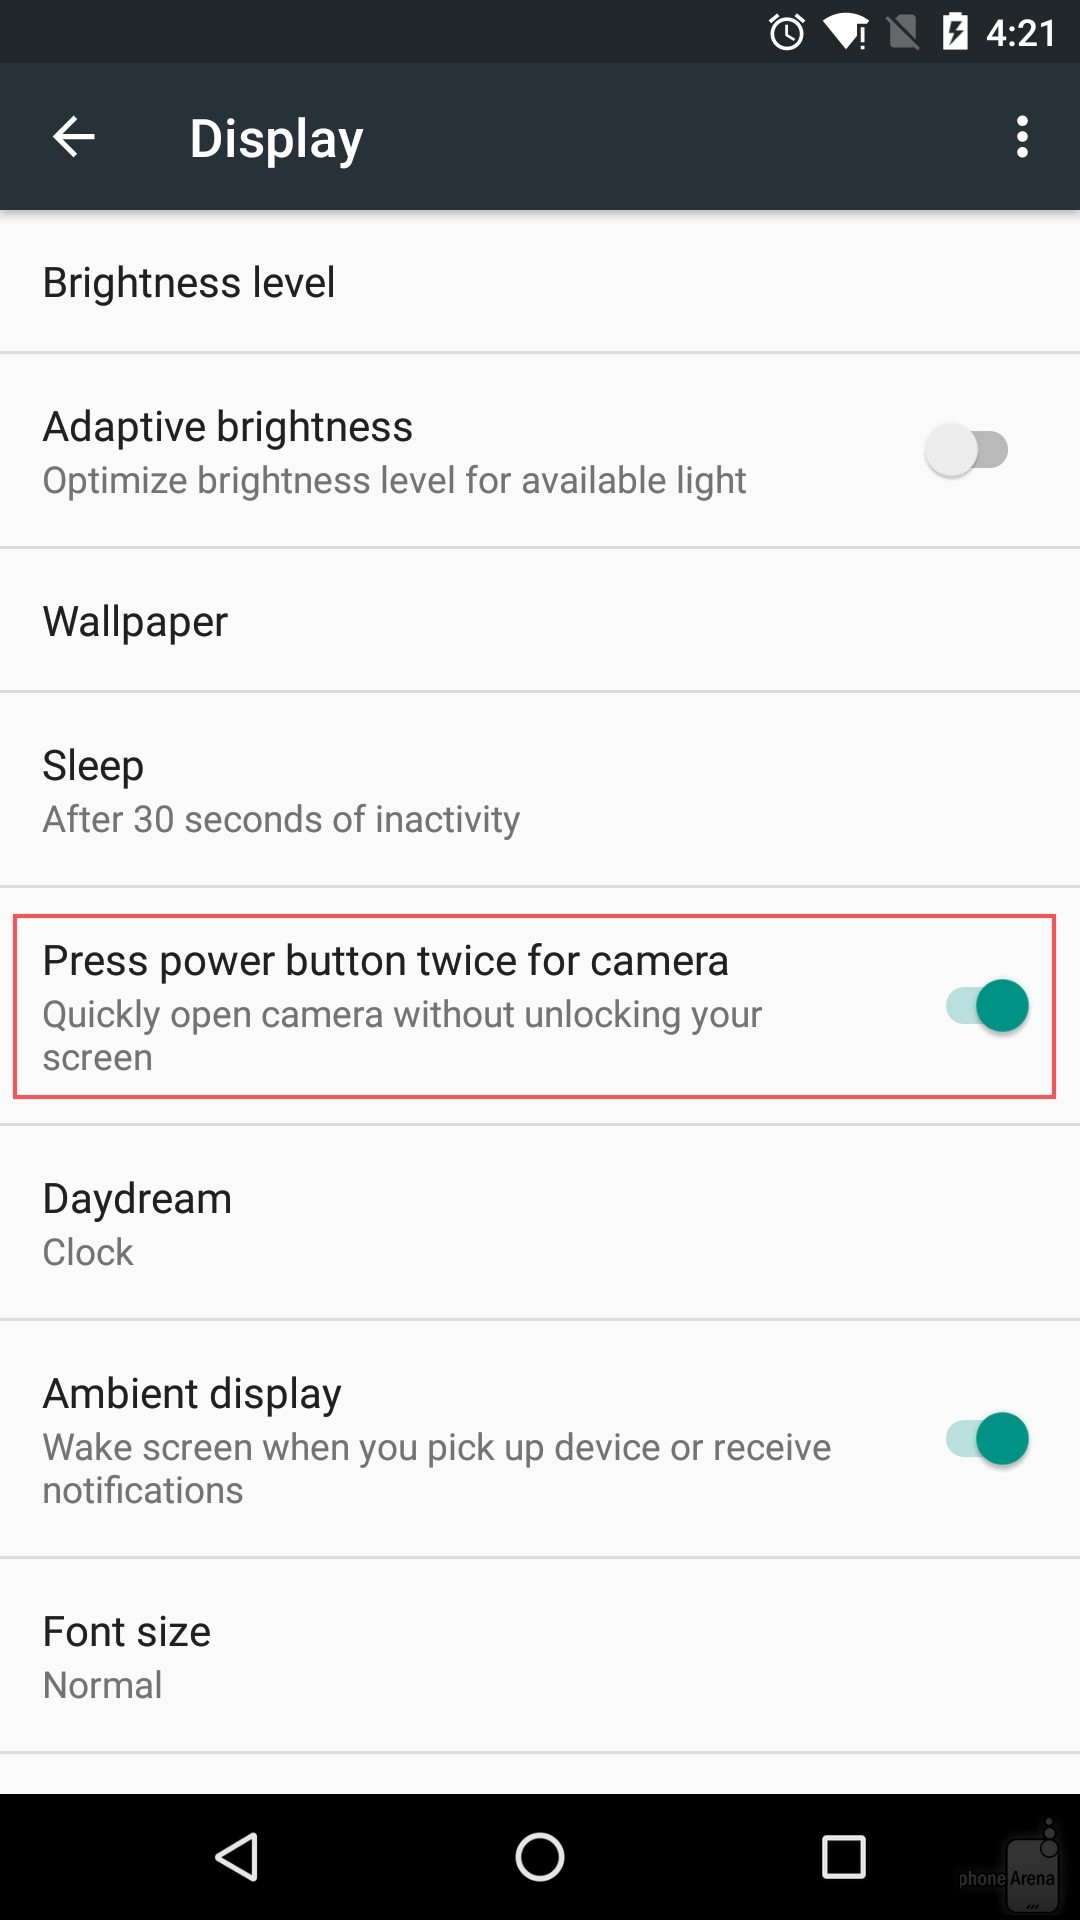 รู้กันหรือยัง?? วิธีเปิดใช้งานกล้องอย่างรวดเร็วบน Google Nexus 6P และ Nexus 5X!!